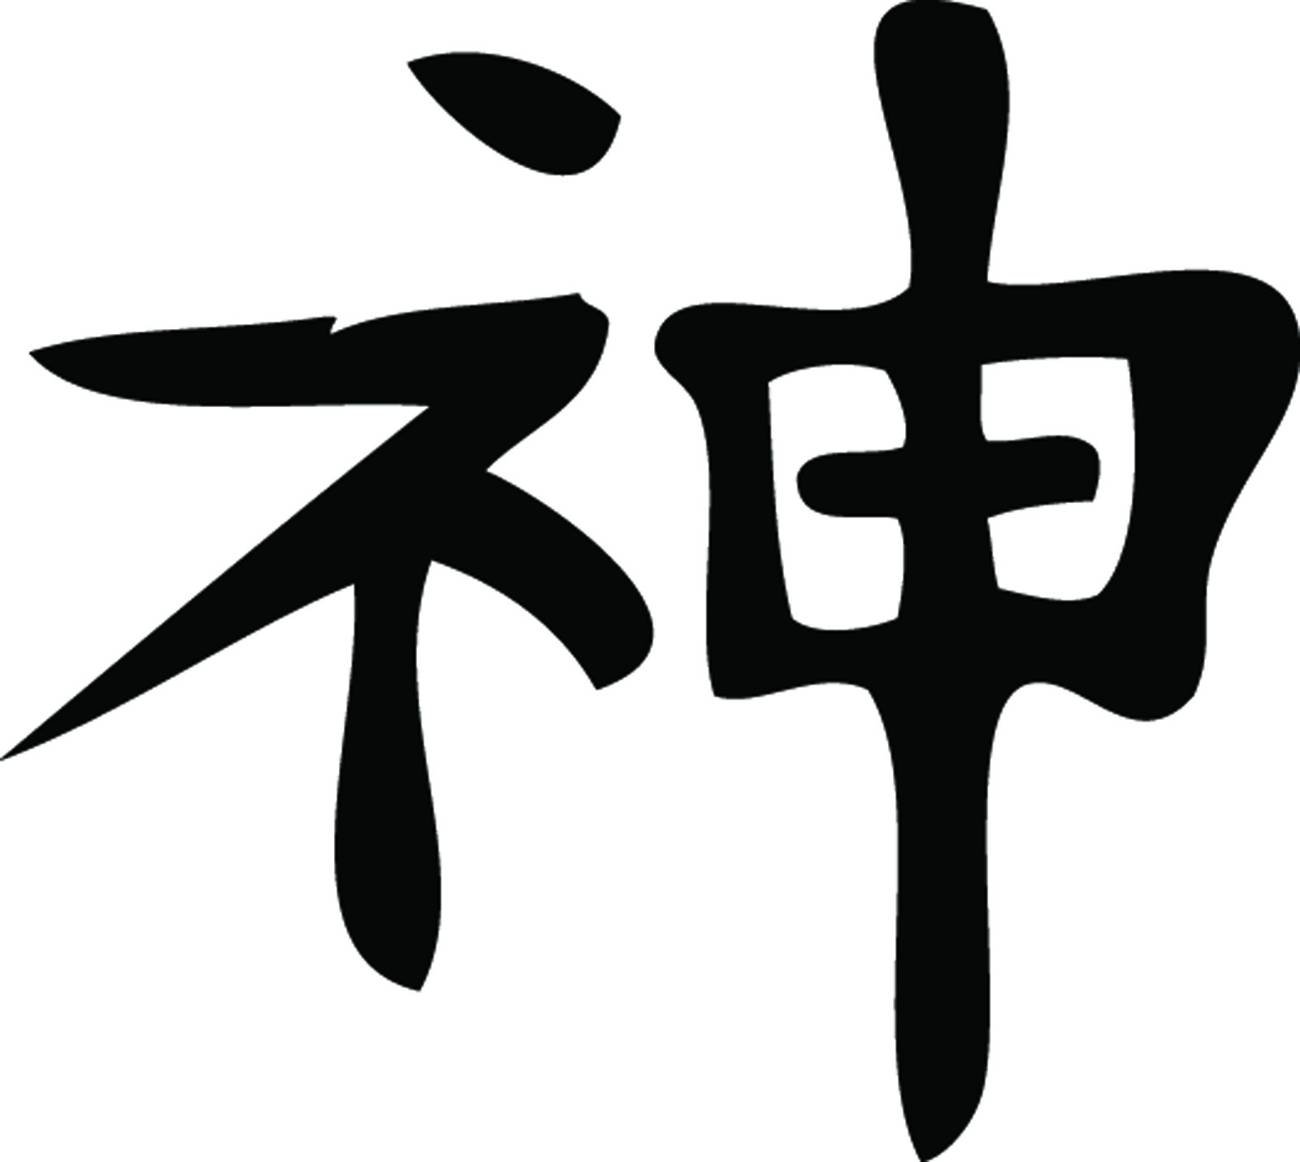 Слова бог с большой буквы. Японские символы. Китайские иероглифы. Иероглиф наказание. Иероглиф Бог.